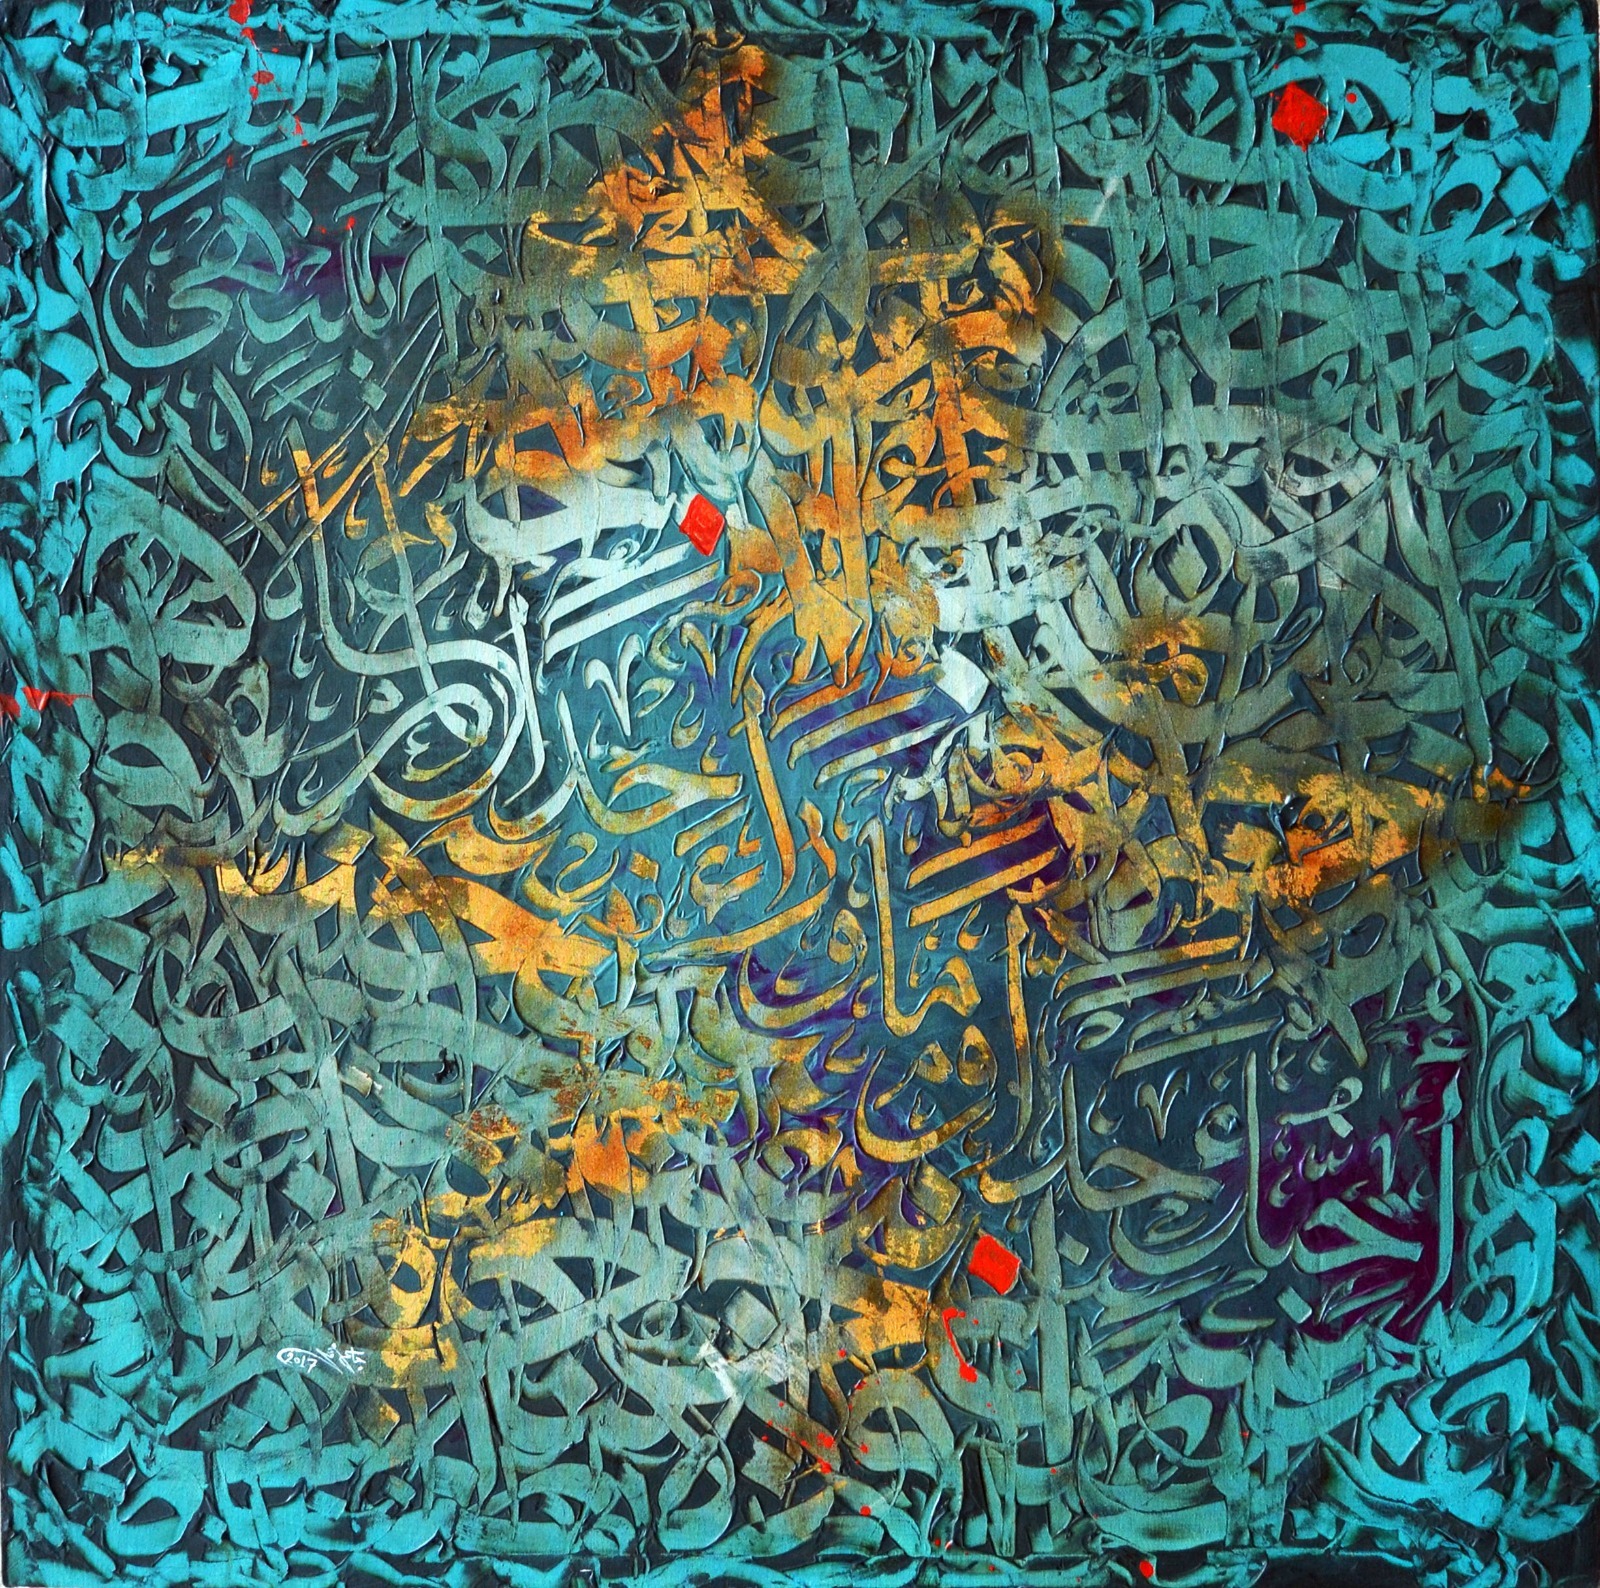 روحانيات: حروفيات ثلاثة عشر فناناً من الأردن والوطن العربي في جاليري رؤى32 للفنون